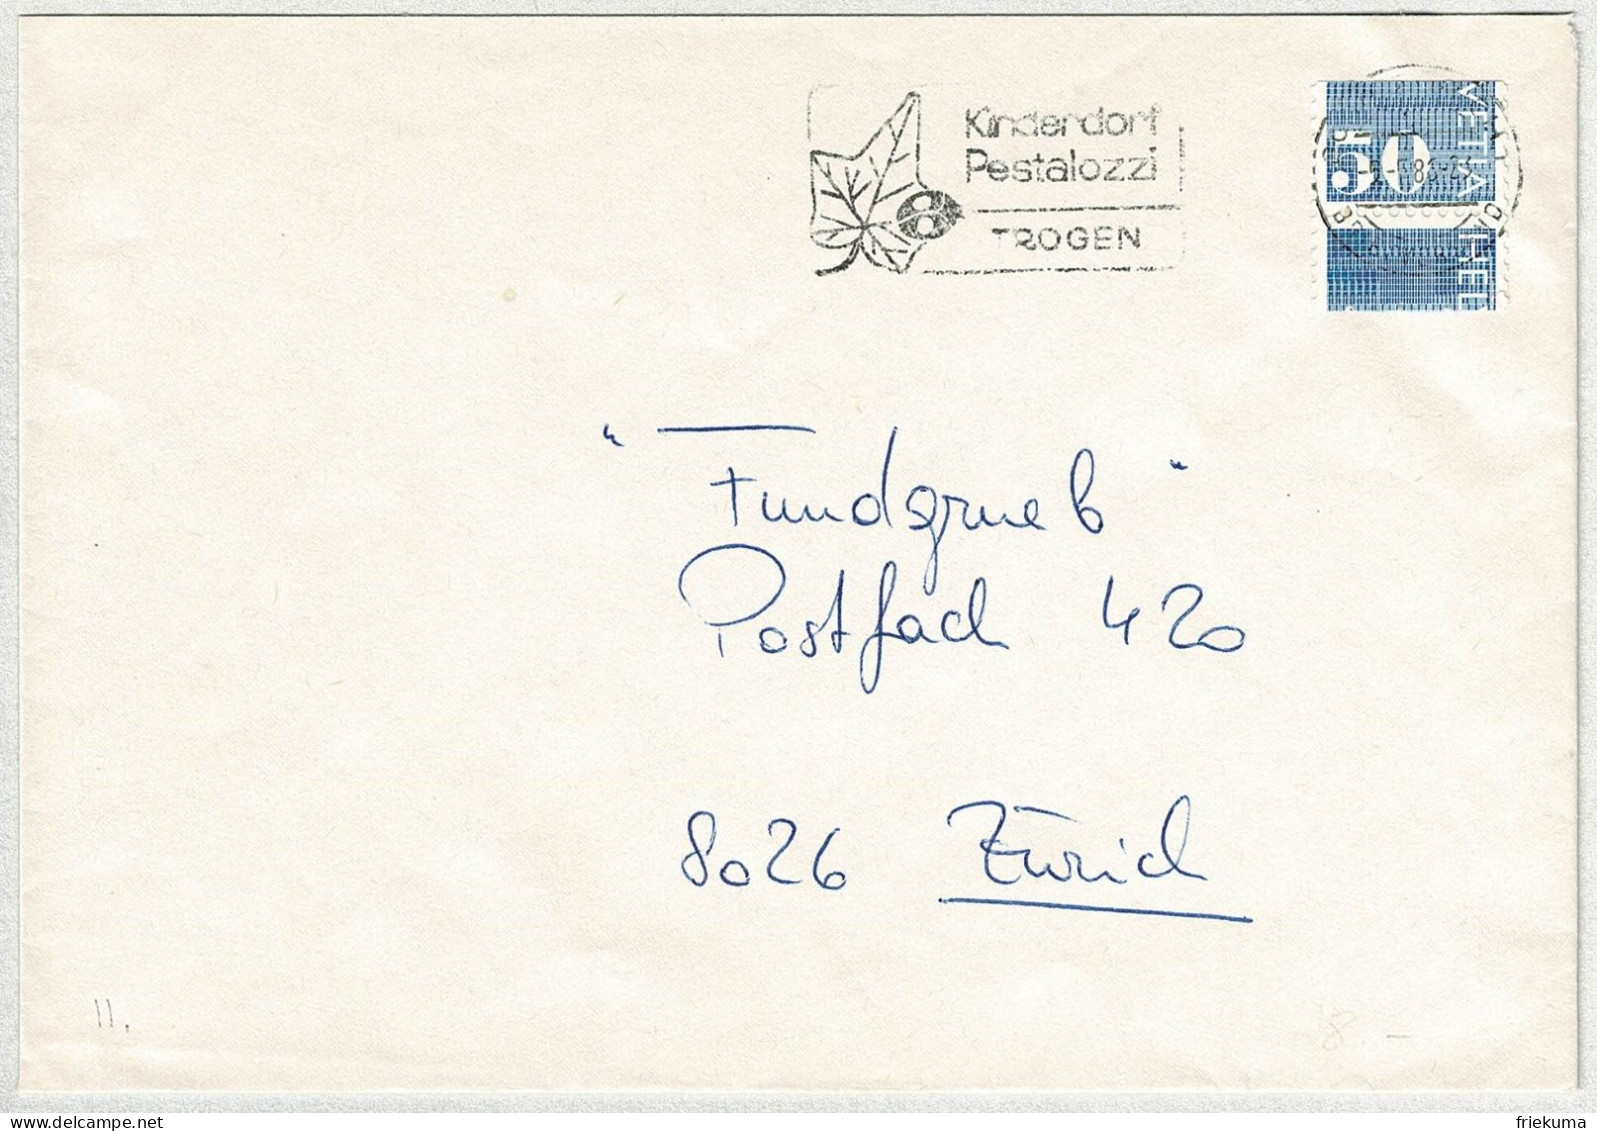 Schweiz 1986, Brief Zürich, Automatenmarke Ziffermarken Verschnitten / Error, Kinderdorf Pestalozzi Trogen, Marienkäfer - Timbres D'automates